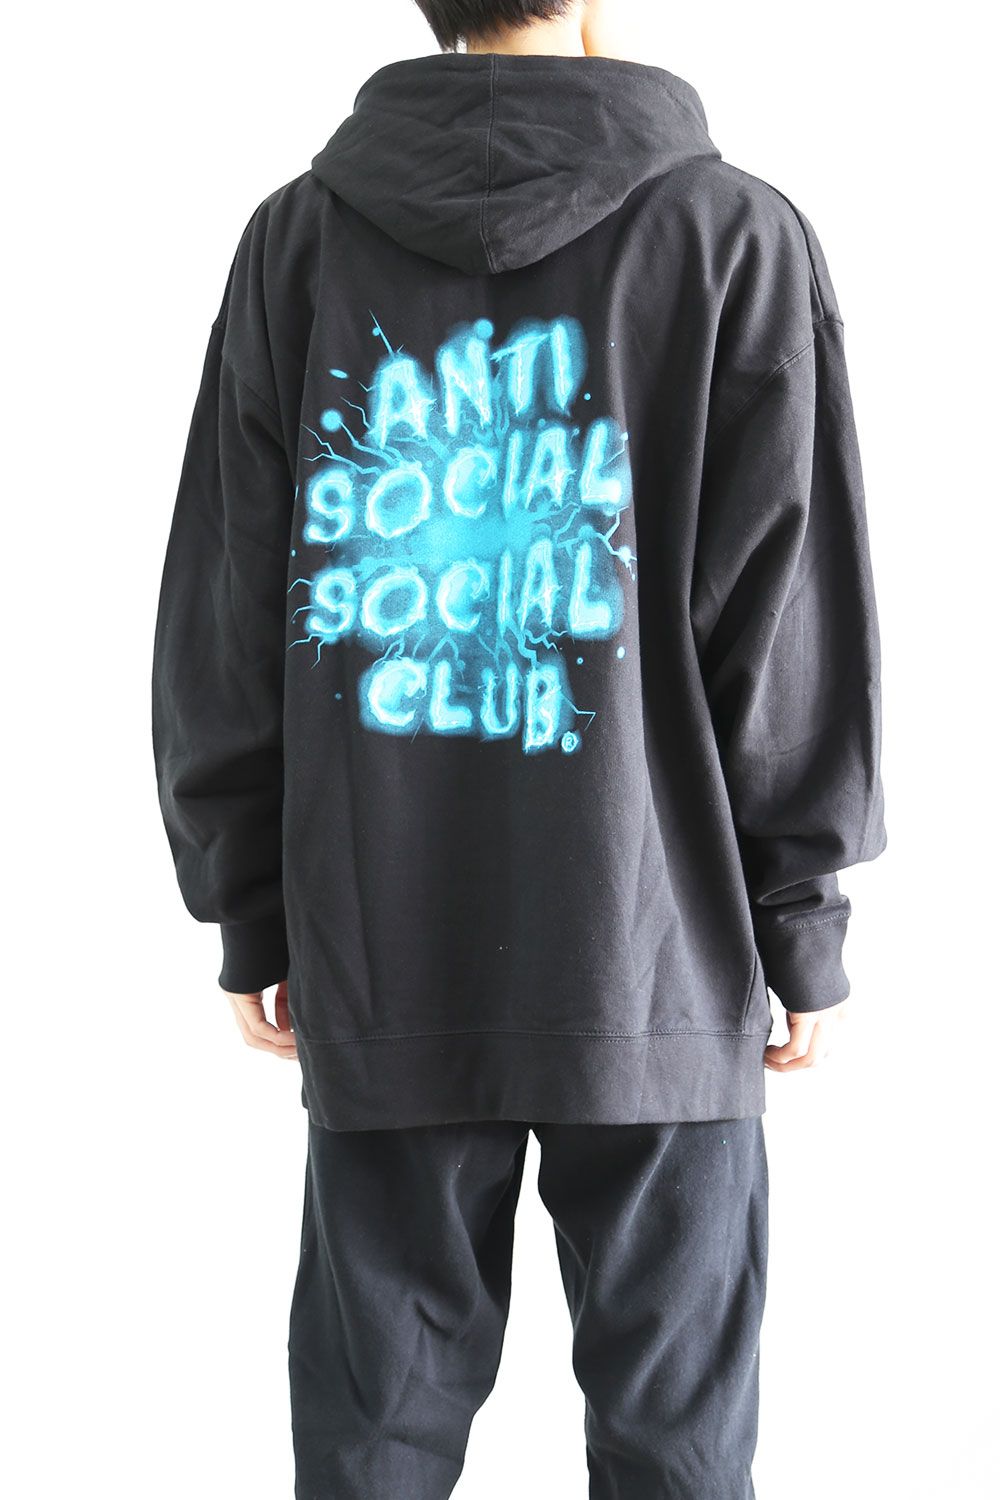 Anti Social Social Club - [ラスト1点 サイズL] I SEE BLUE BLACK ...